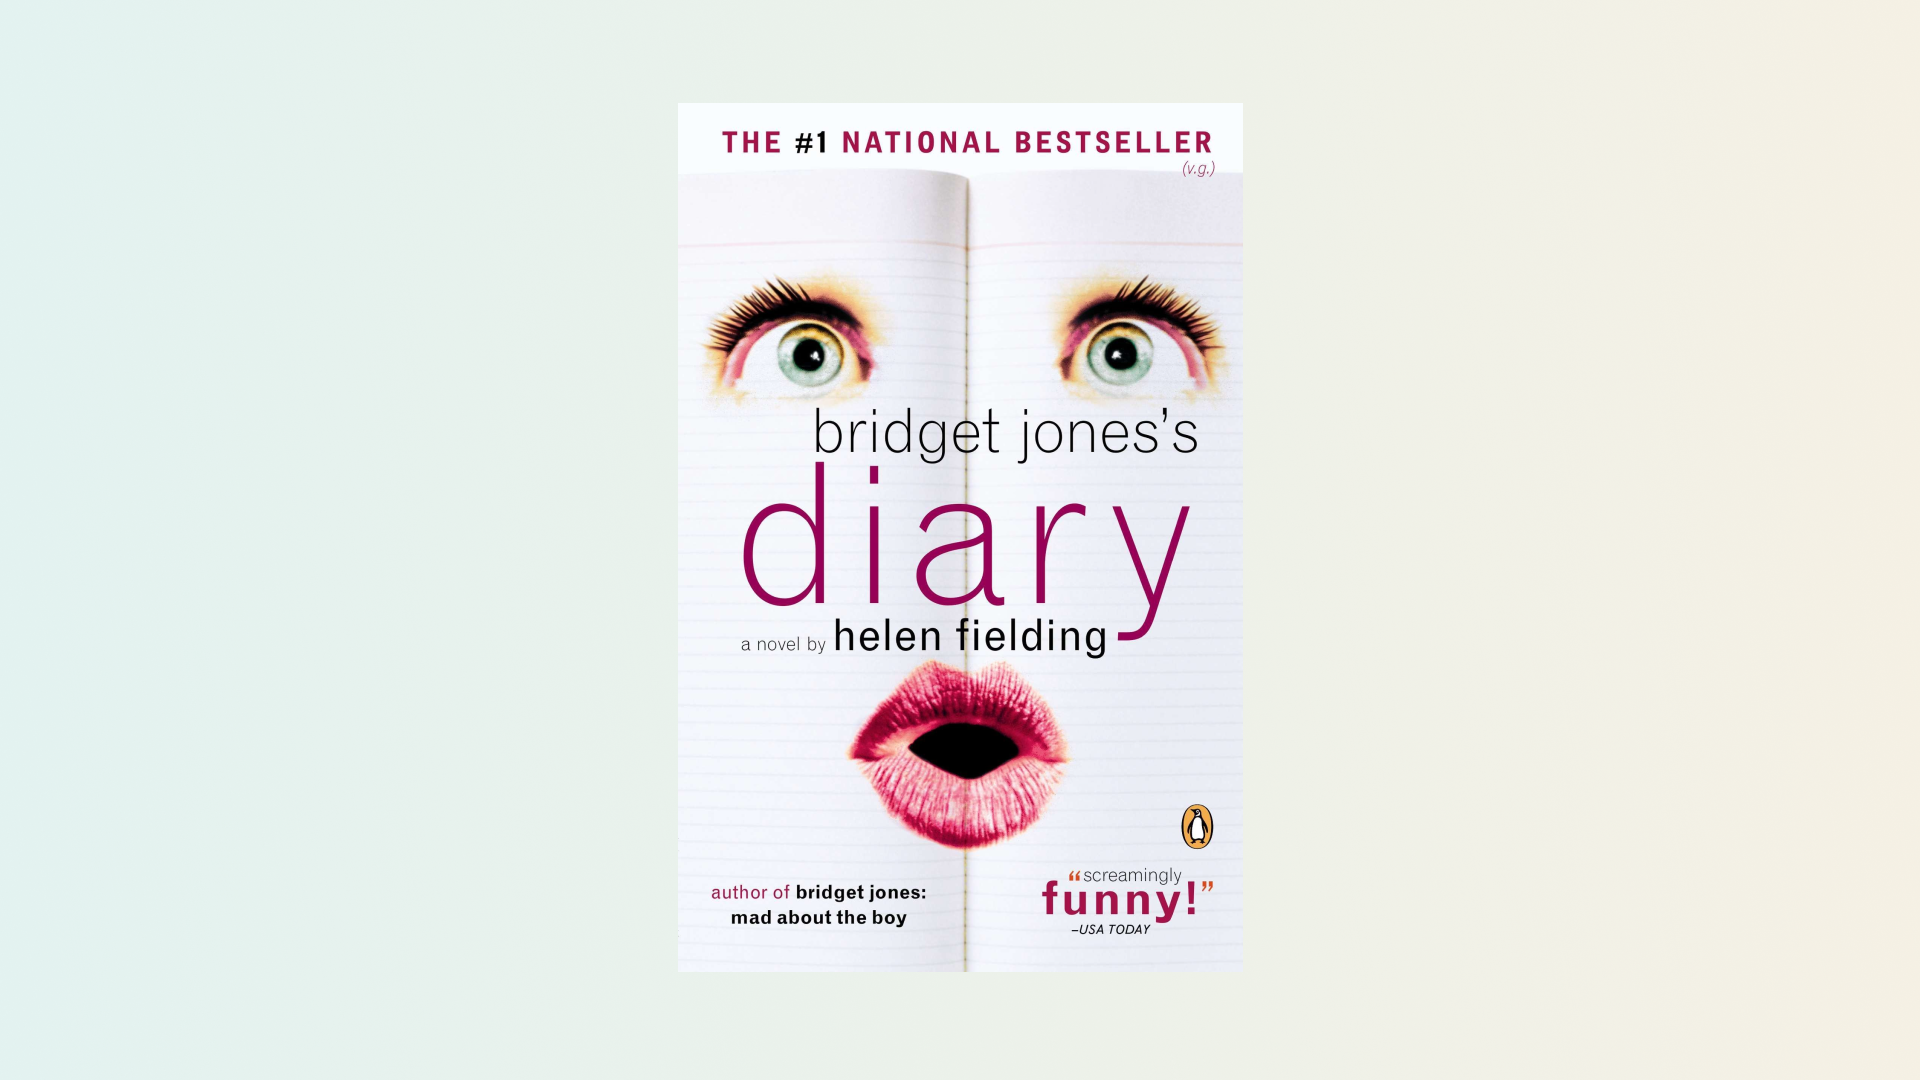 “Bridget Jones’s Diary” by Helen Fielding